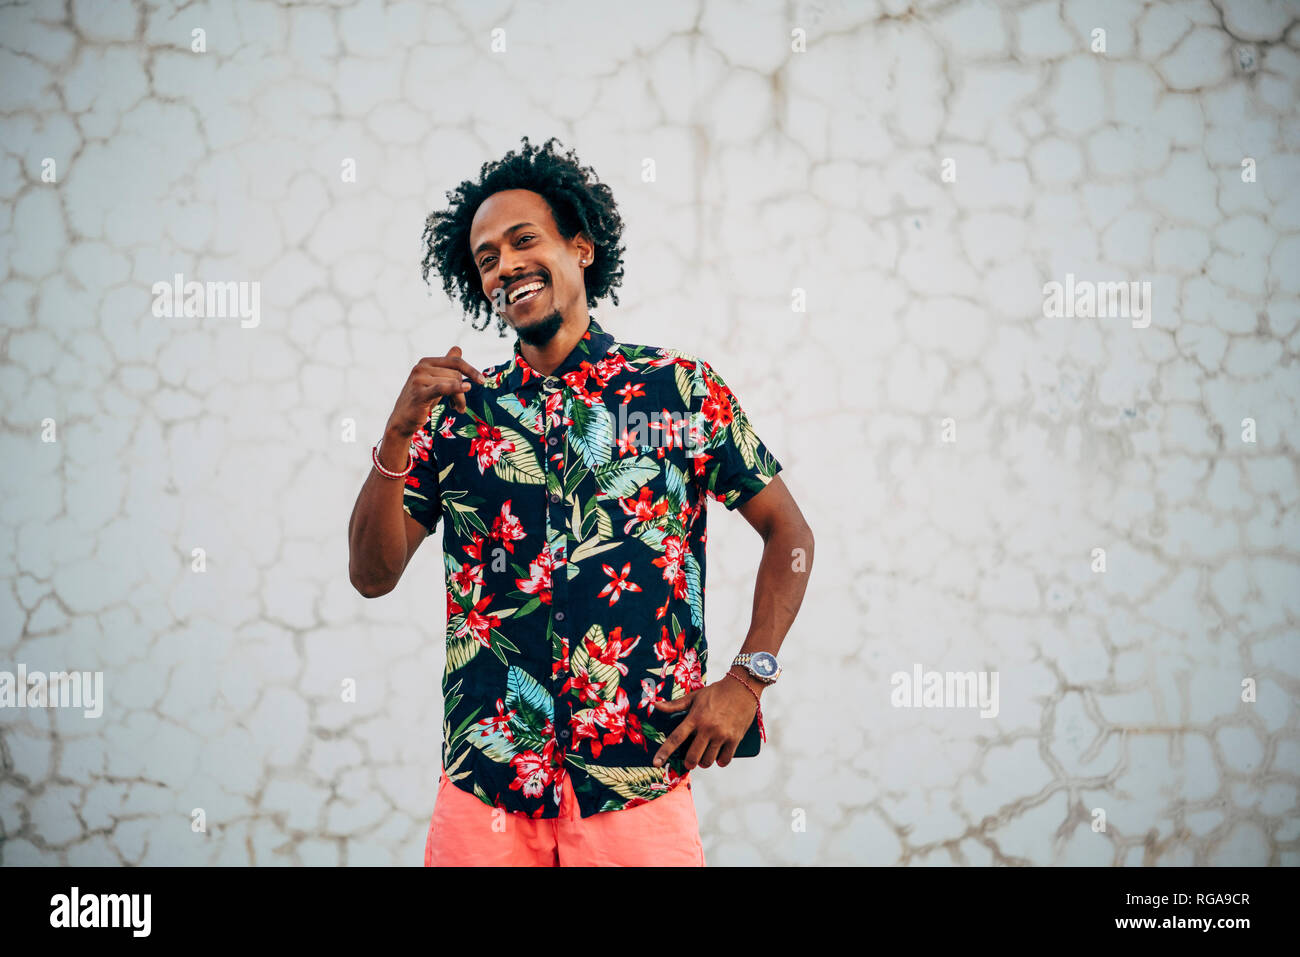 Portrait von tanzenden Mann mit Shirt mit floralem Design Stockfoto